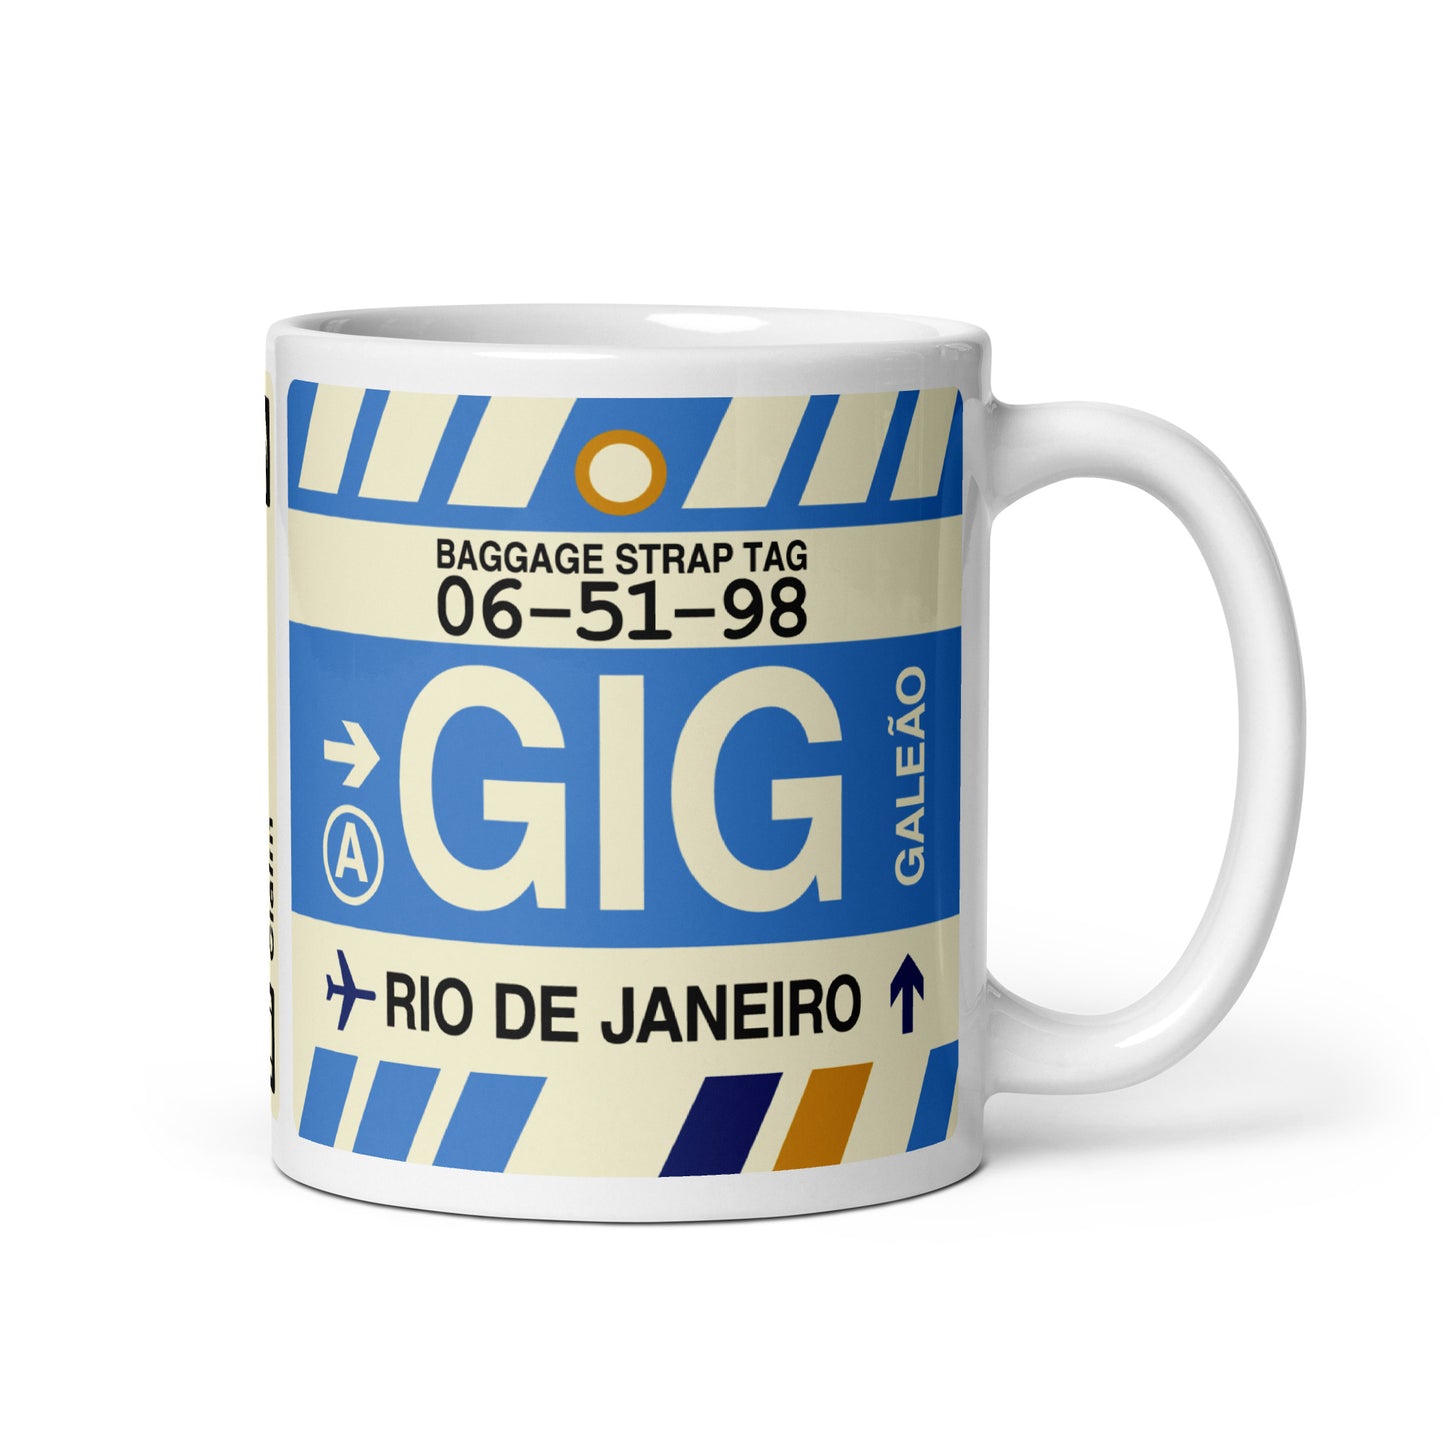 Travel-Themed Coffee Mug • GIG Rio de Janeiro • YHM Designs - Image 01